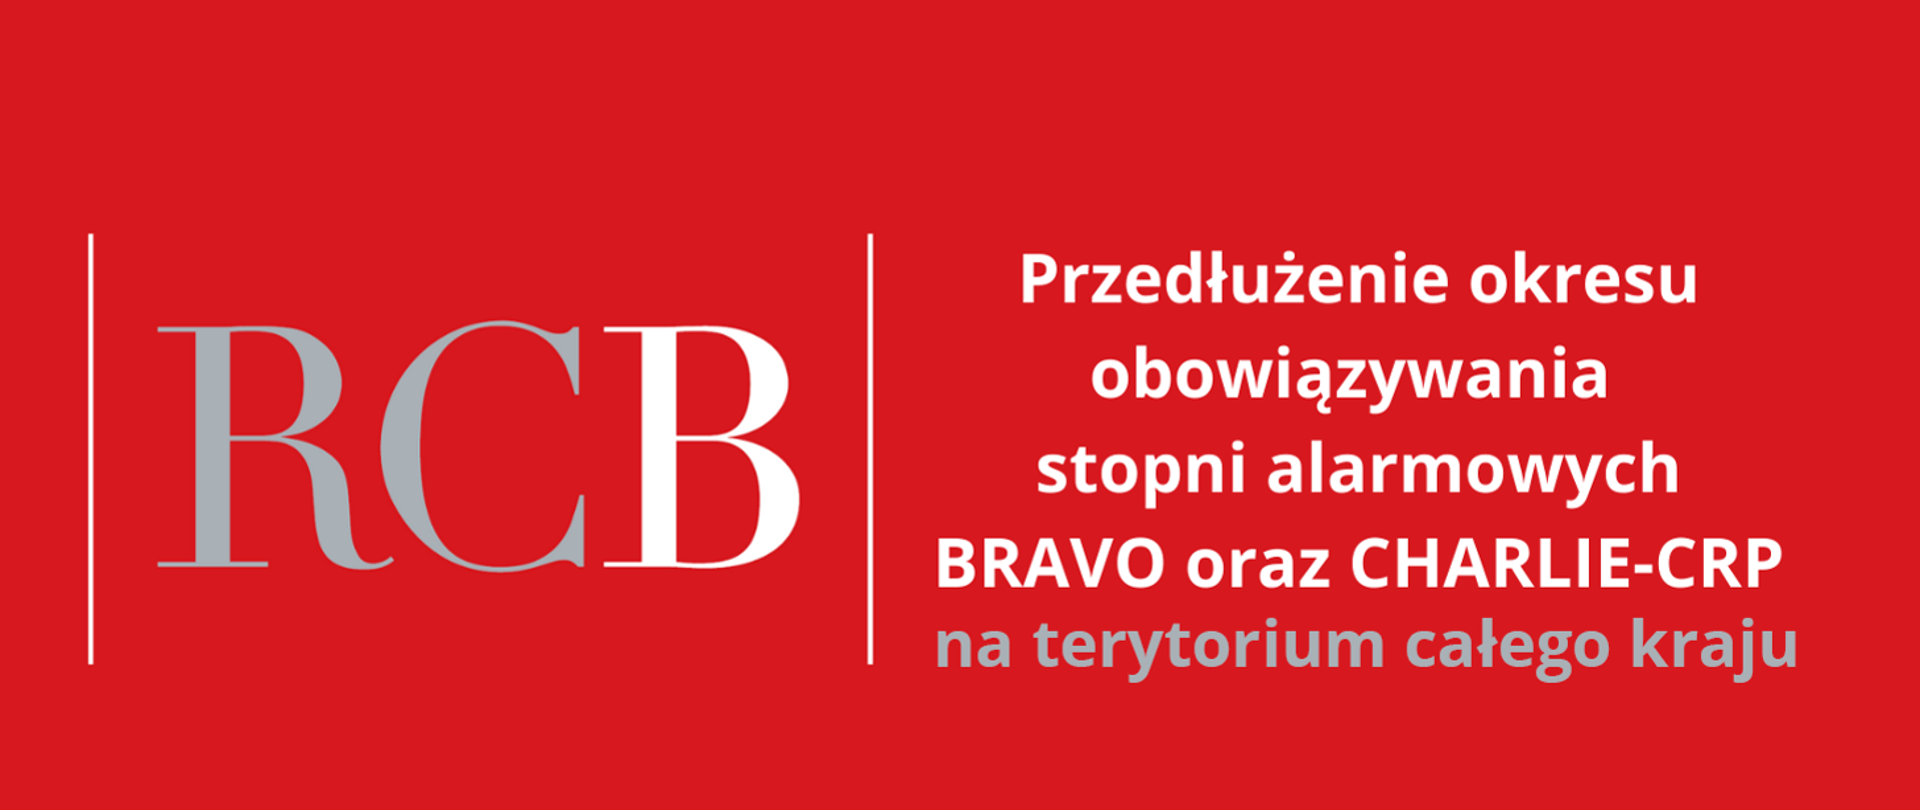 Na czerwonym tle napis: Przedłużenie okresu obowiązywania stopni alarmowych BRAVO oraz CHARLIE-CRP na terytorium całego kraju